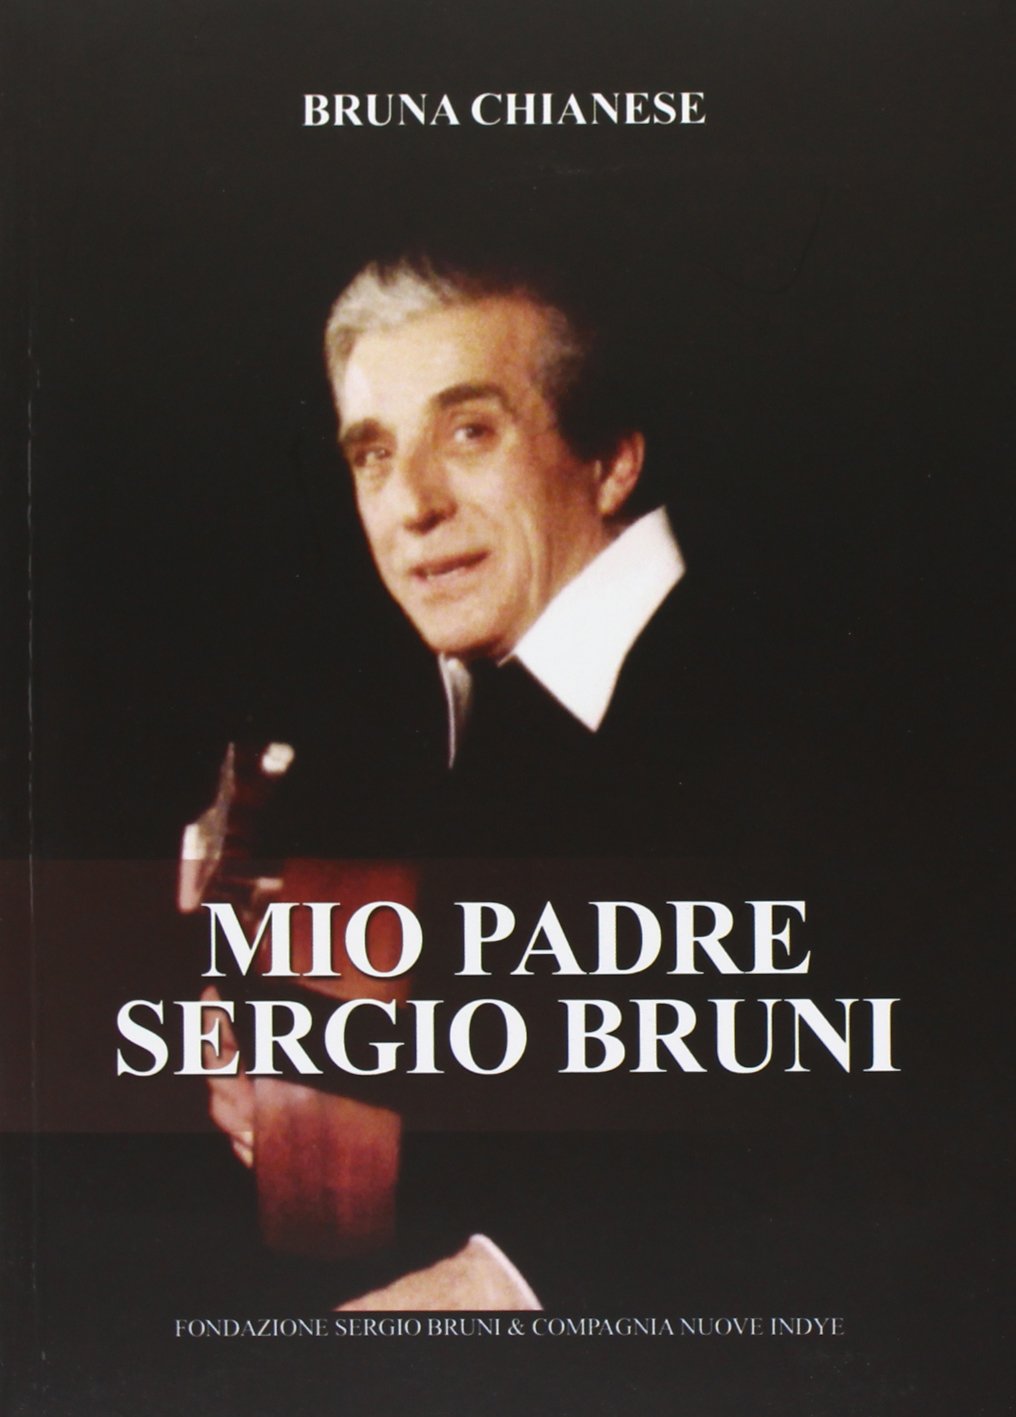 Libri Bruna Chianese - Mio Padre Sergio Bruni (Libro+Cd) NUOVO SIGILLATO, EDIZIONE DEL 08/10/2013 SUBITO DISPONIBILE